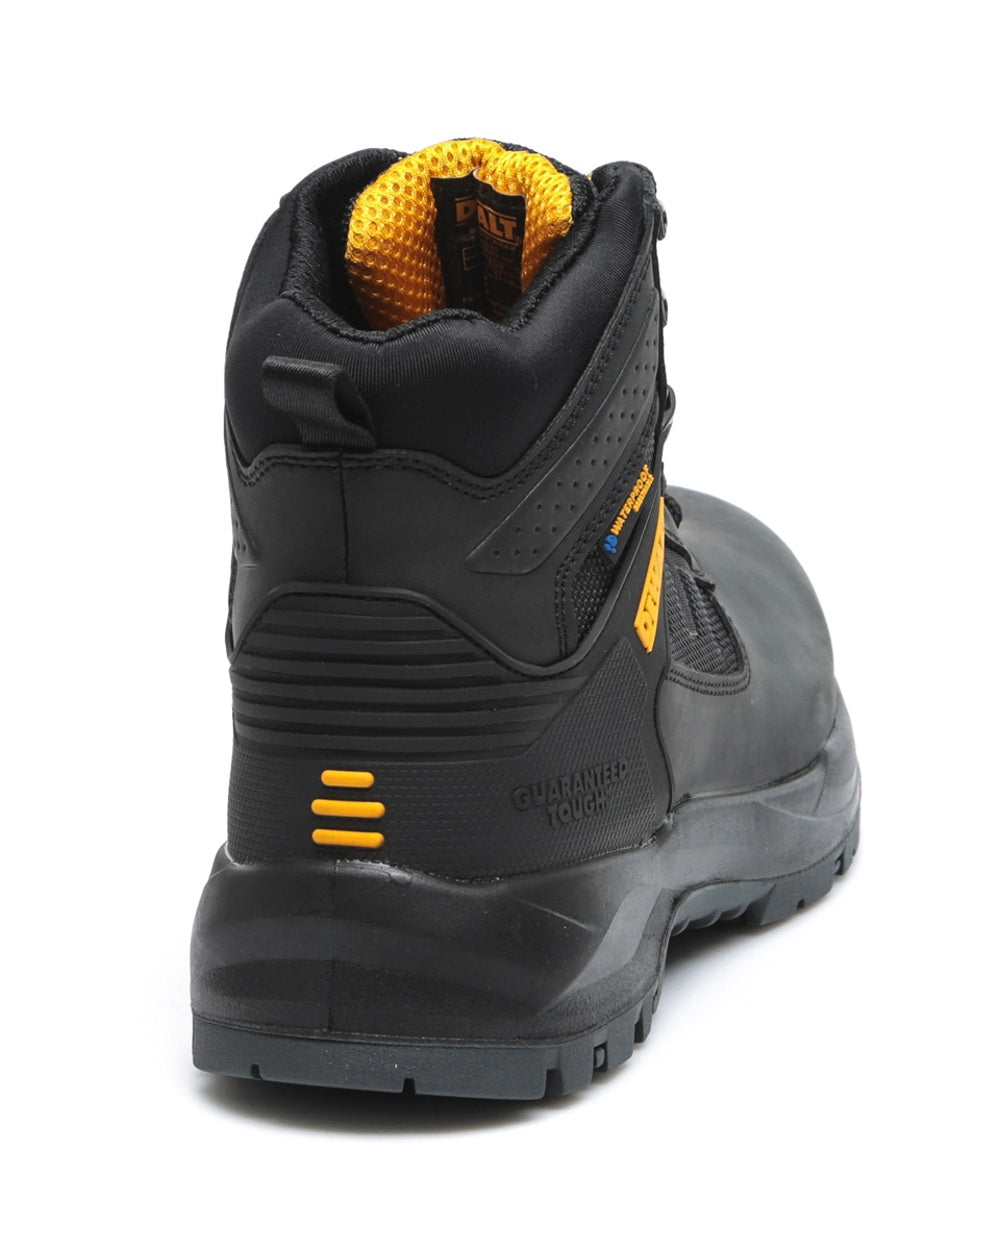 DeWalt Douglas Waterproof Safety Boots in Black